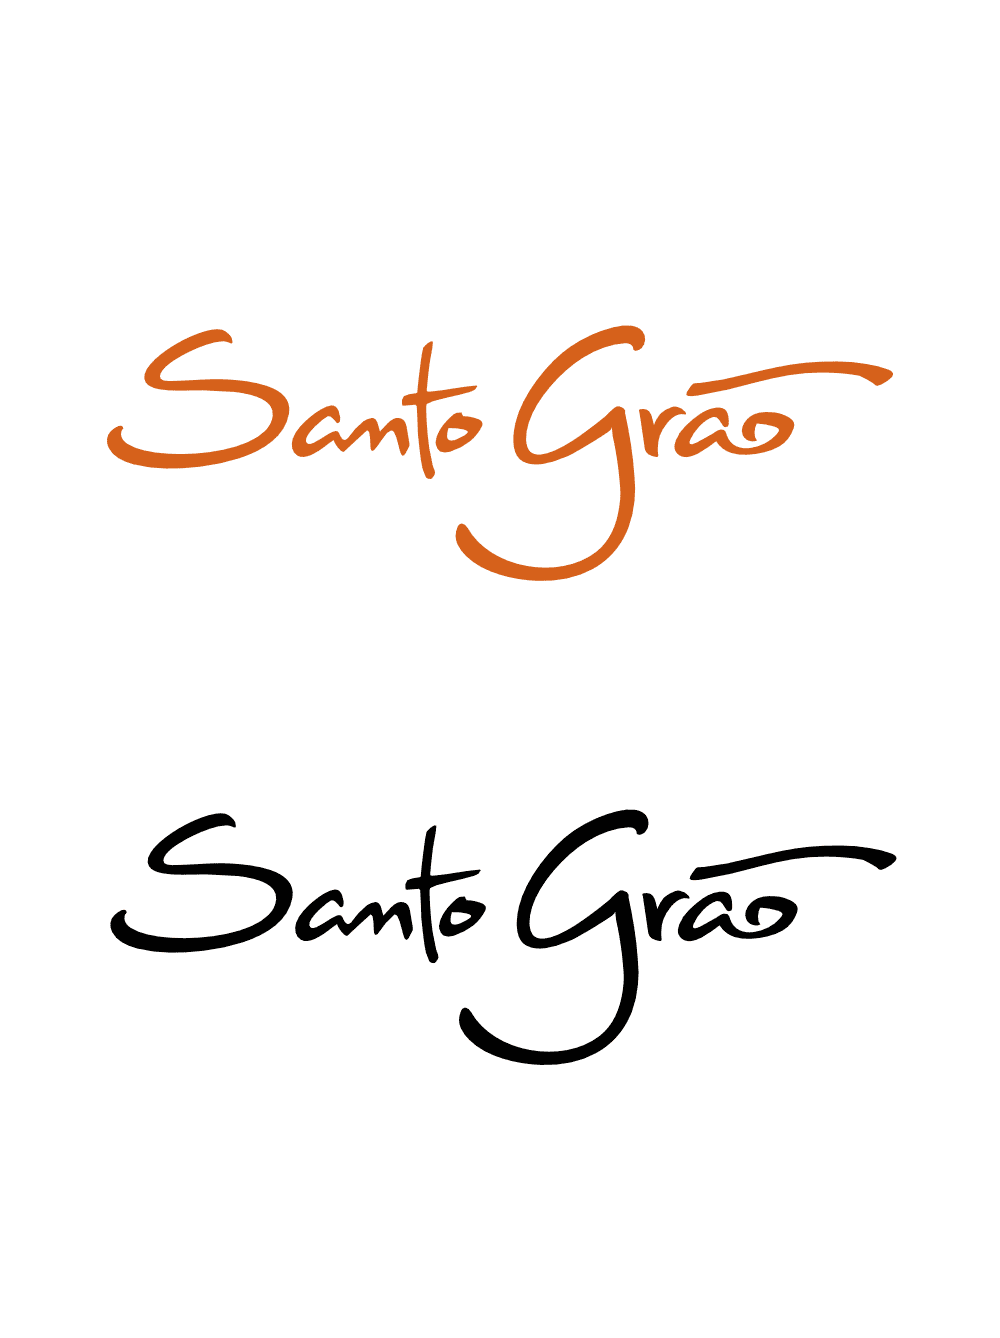 Marca Santo Grão em duas versões, laranja e preta, aplicadas sobre fundo branco. Design desenvolvido no âmbito do projeto de Identidade Visual.